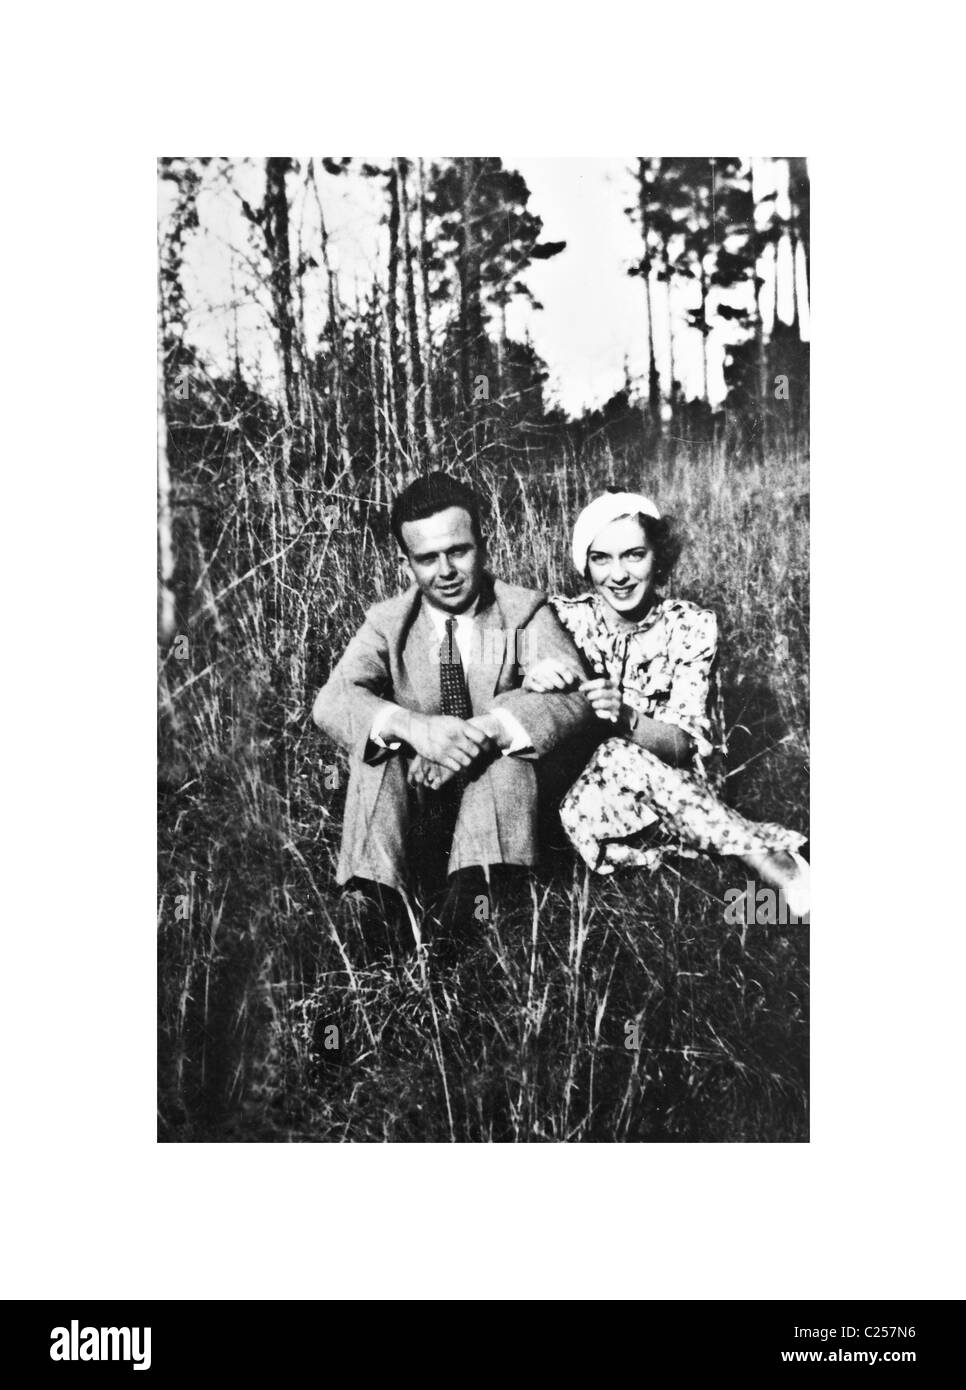 Una antigua imagen de un hombre y una mujer al aire libre. Foto de stock